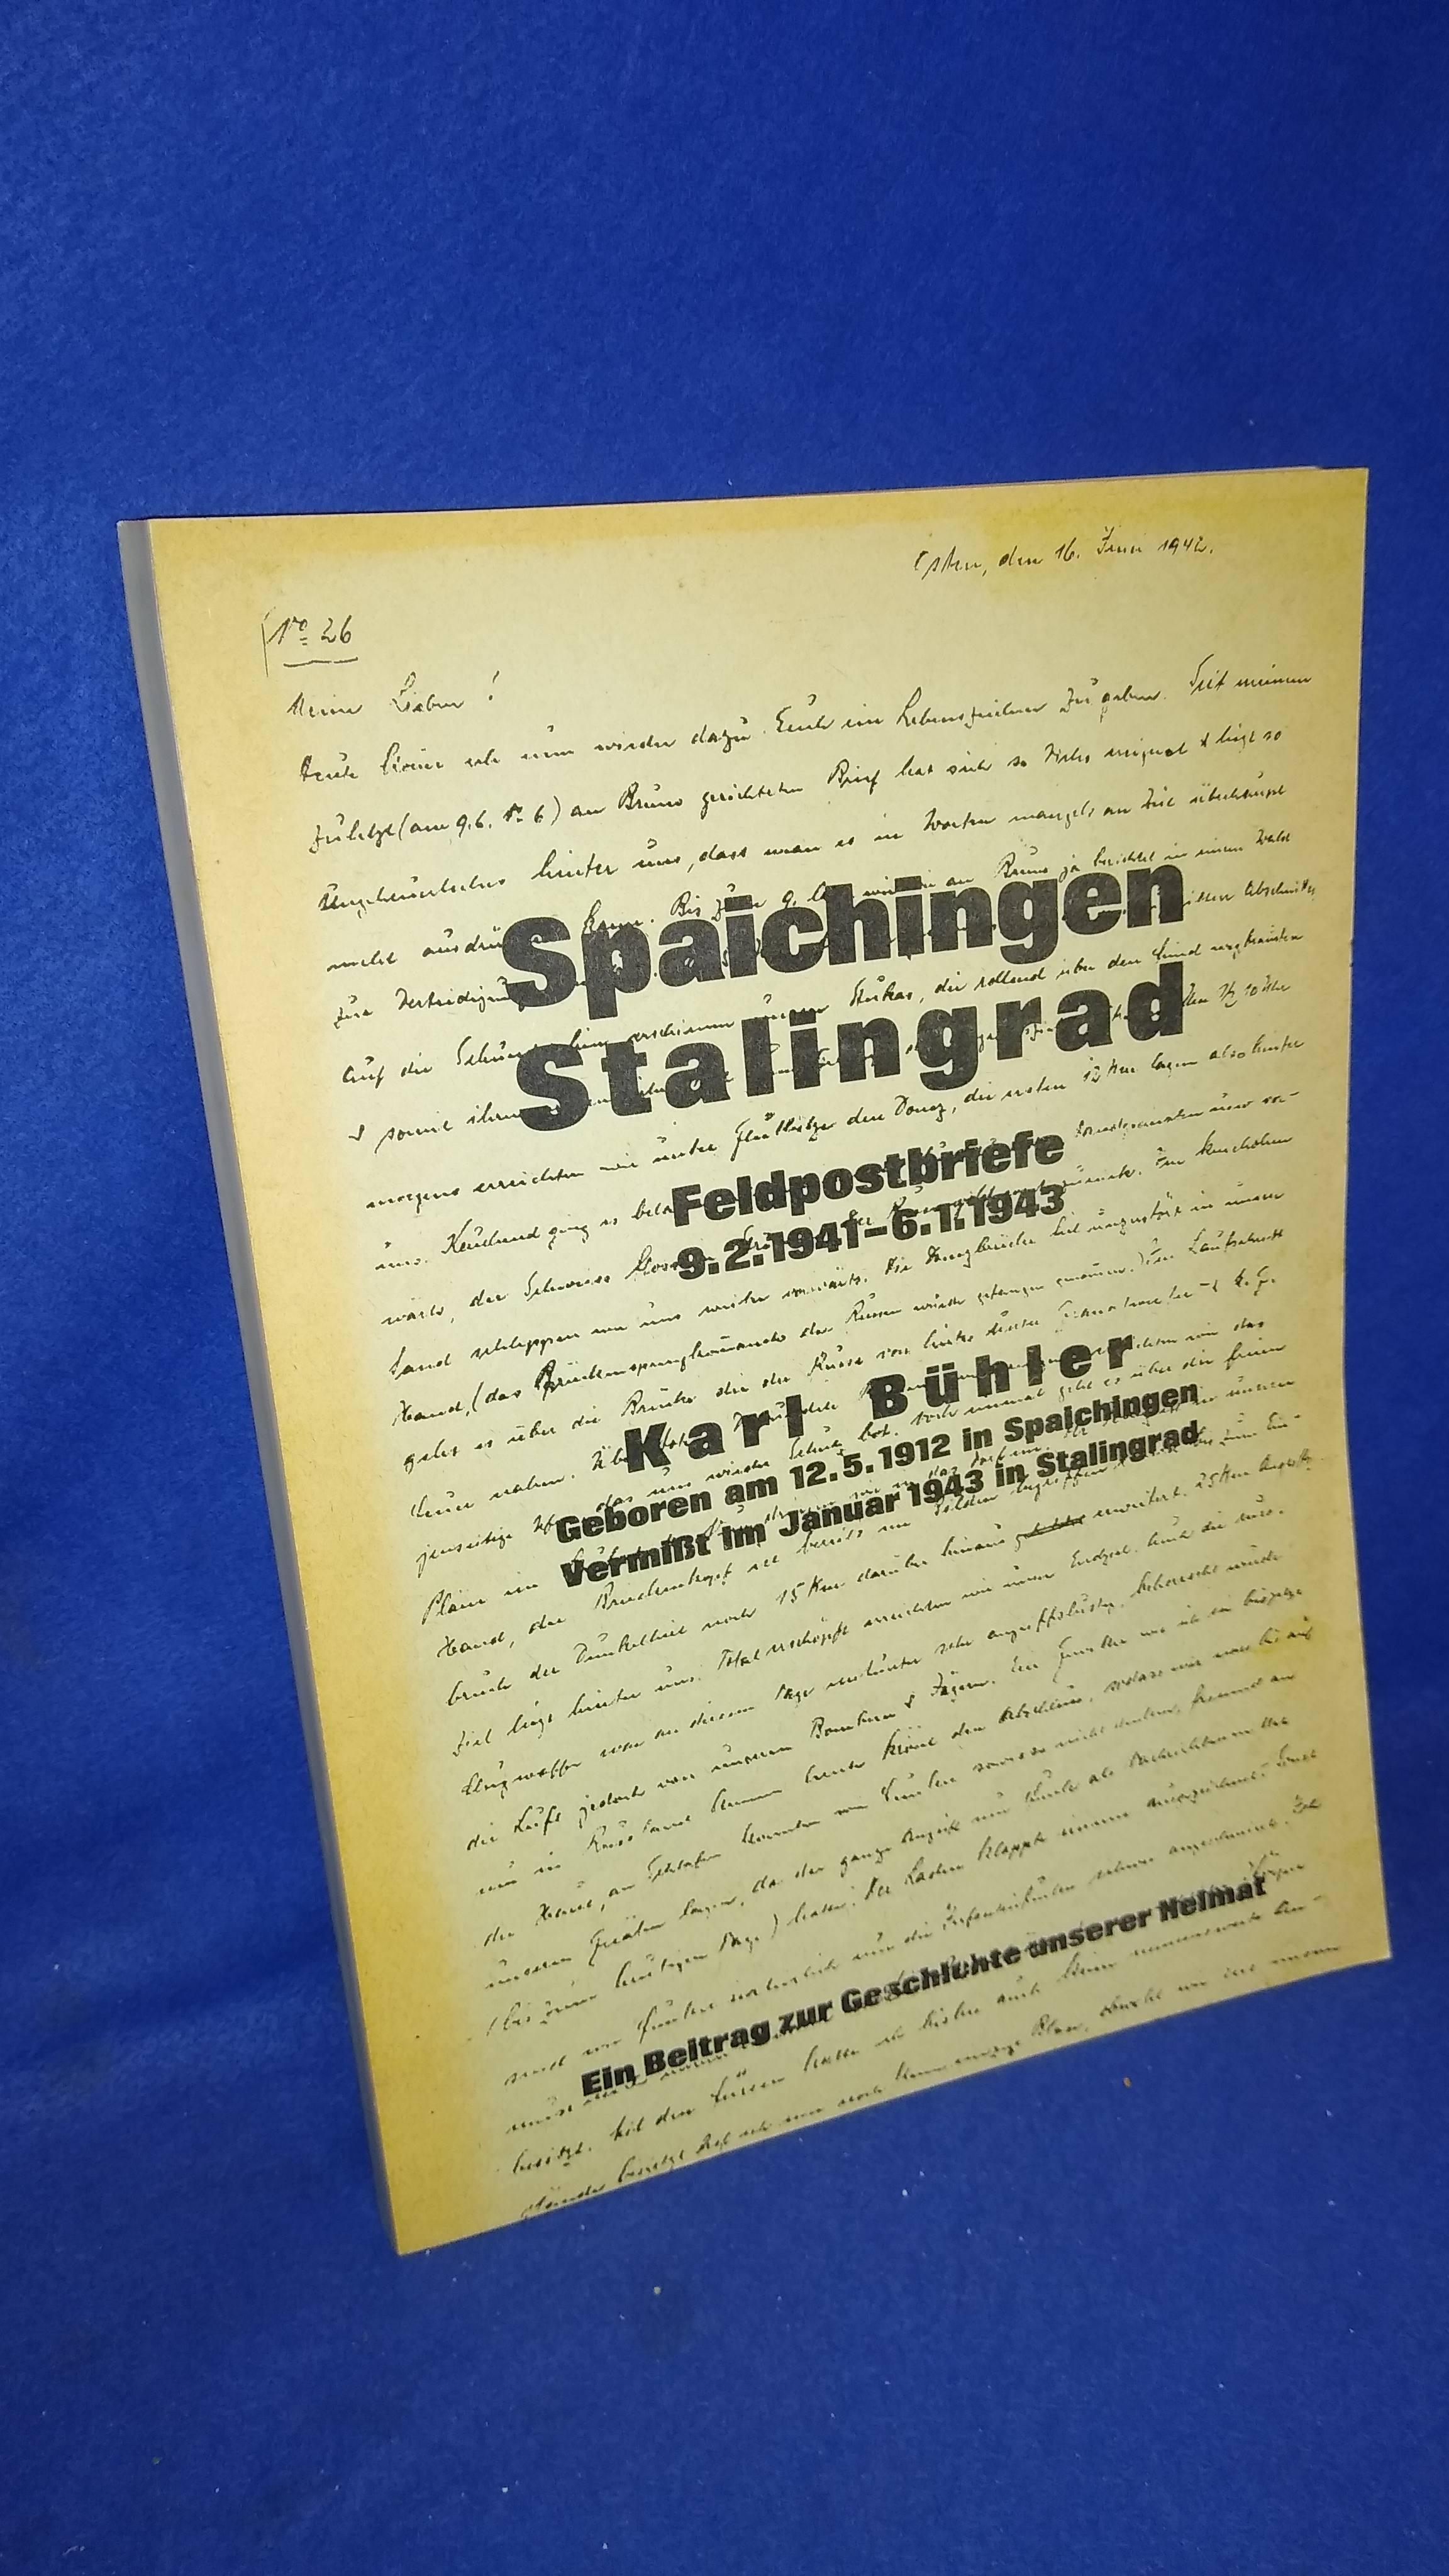 Spaichingen, Stalingrad: Feldpostbriefe, 9.2. 1941-6.1. 1943, ein Beitrag zur Geschichte unserer Heimat.